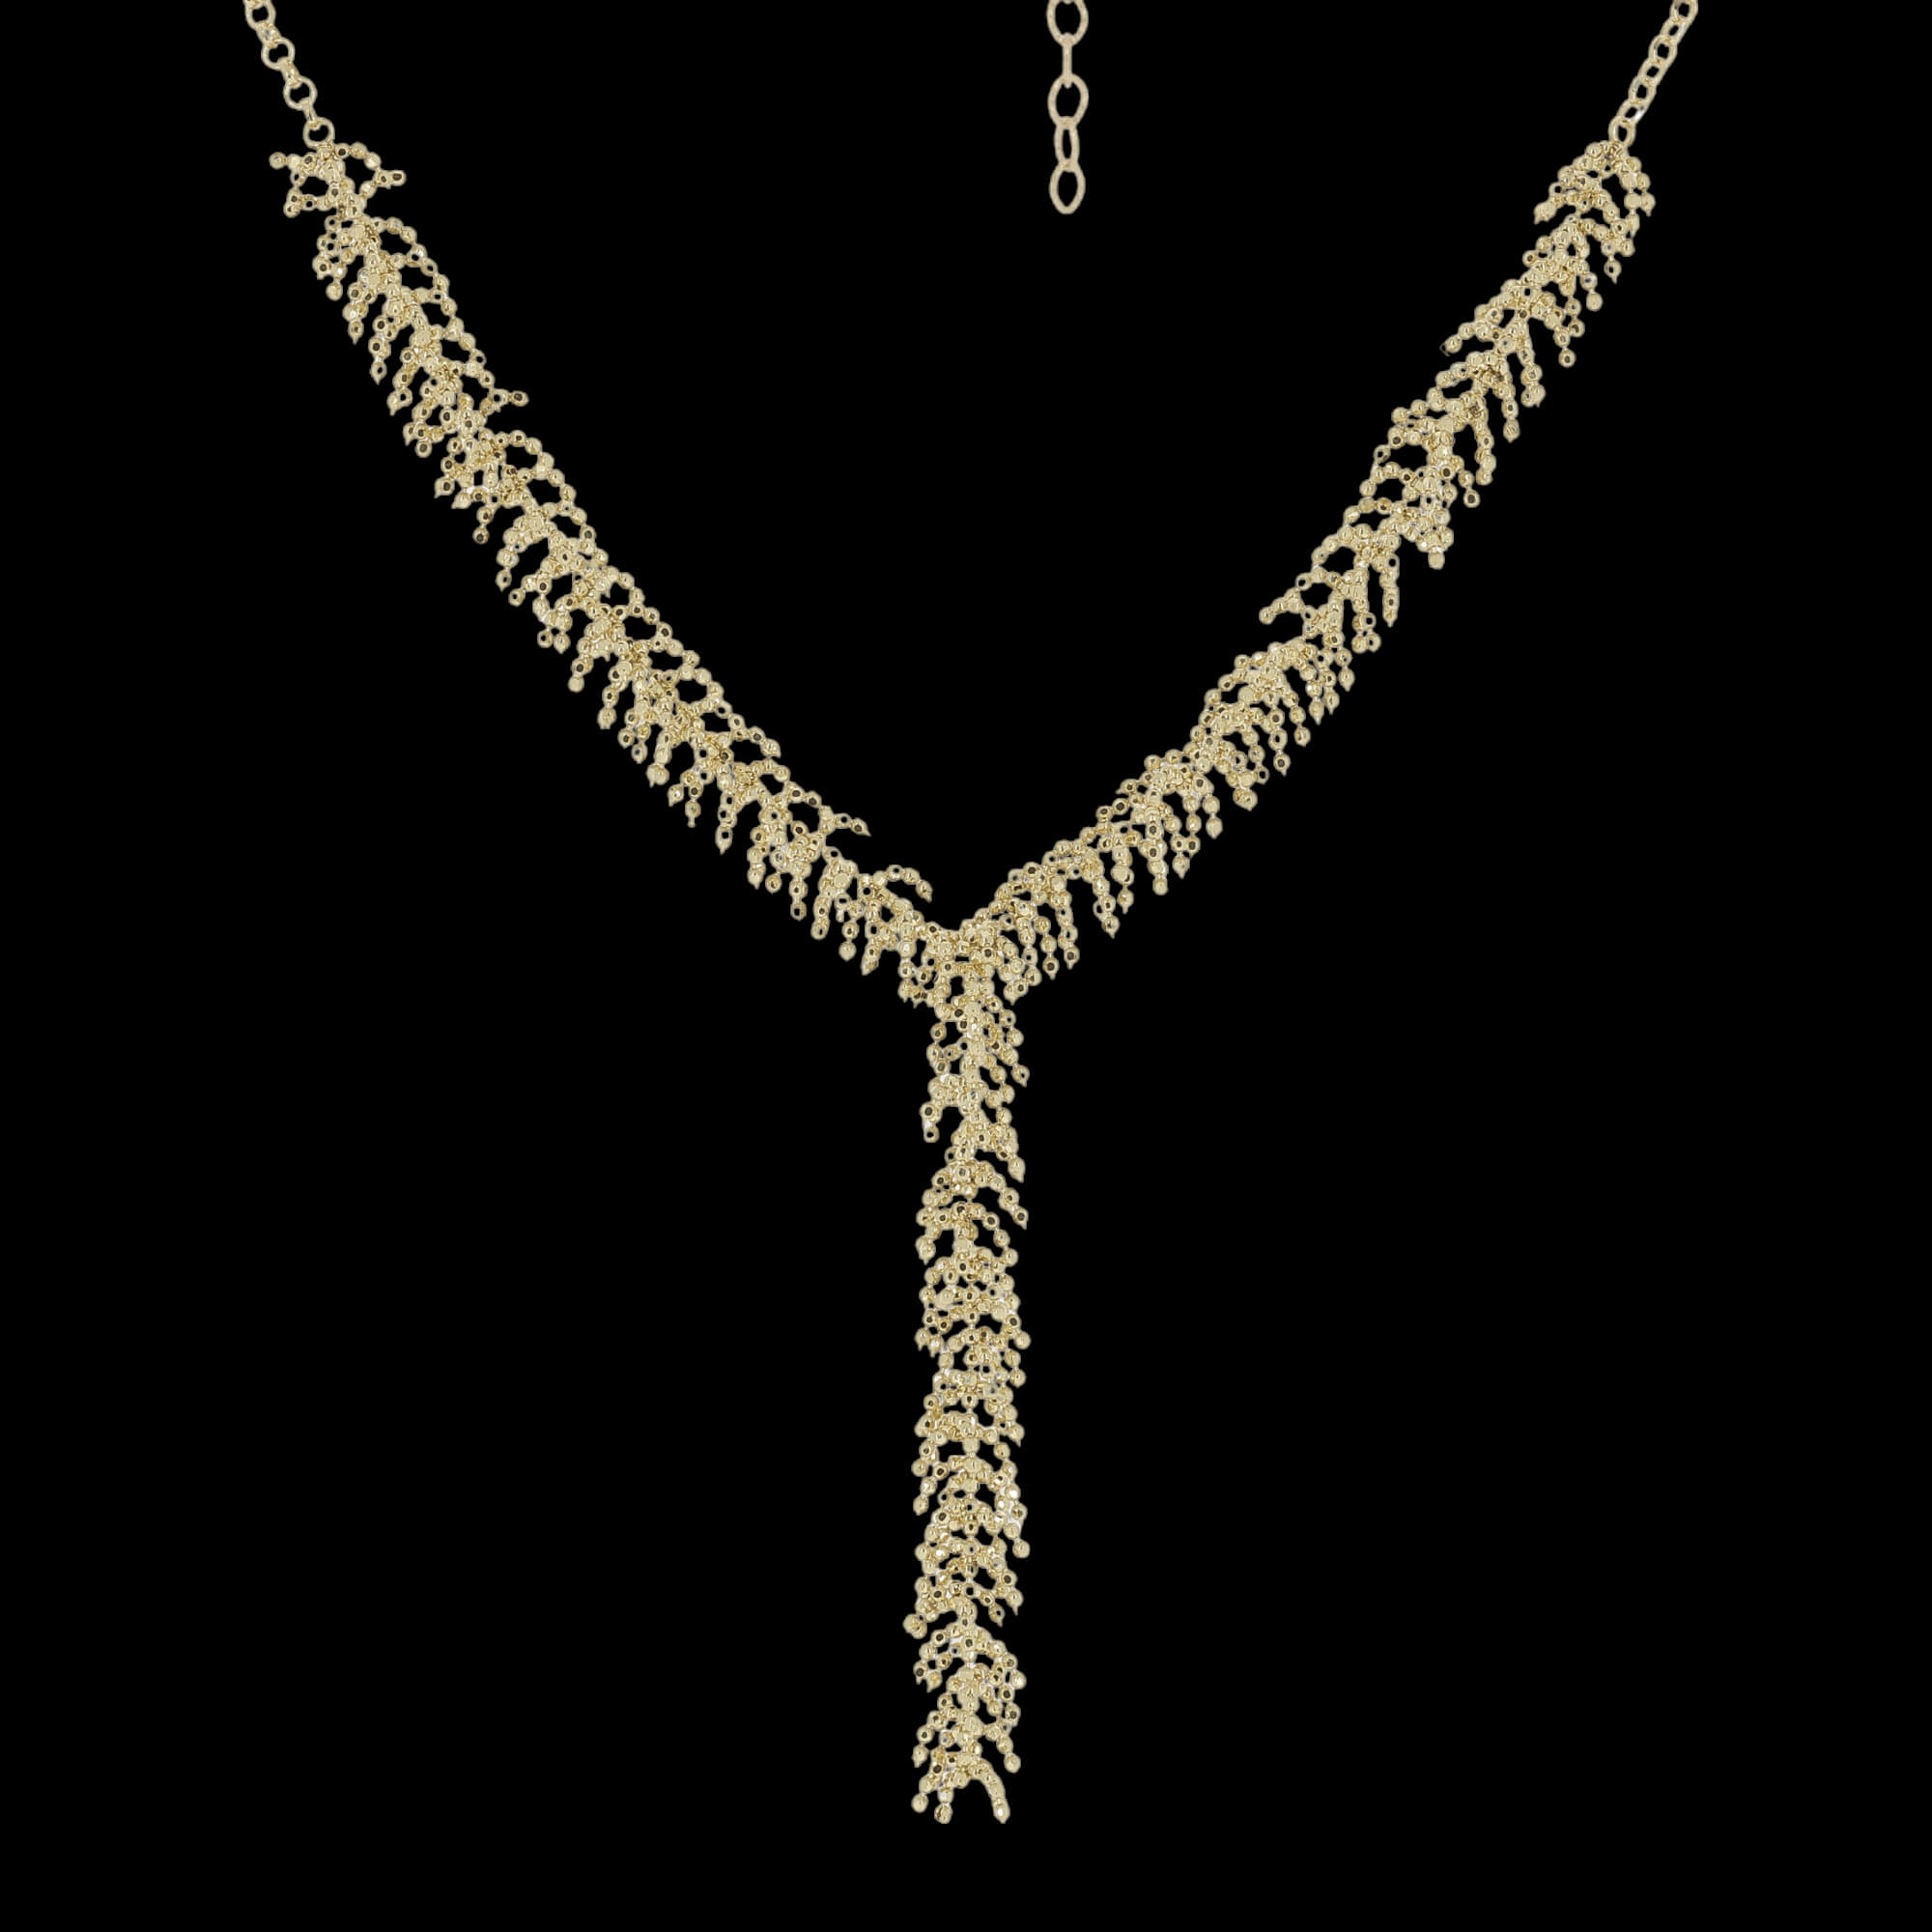 Chique collier met verfijnde vertakkingen van 18kt goud